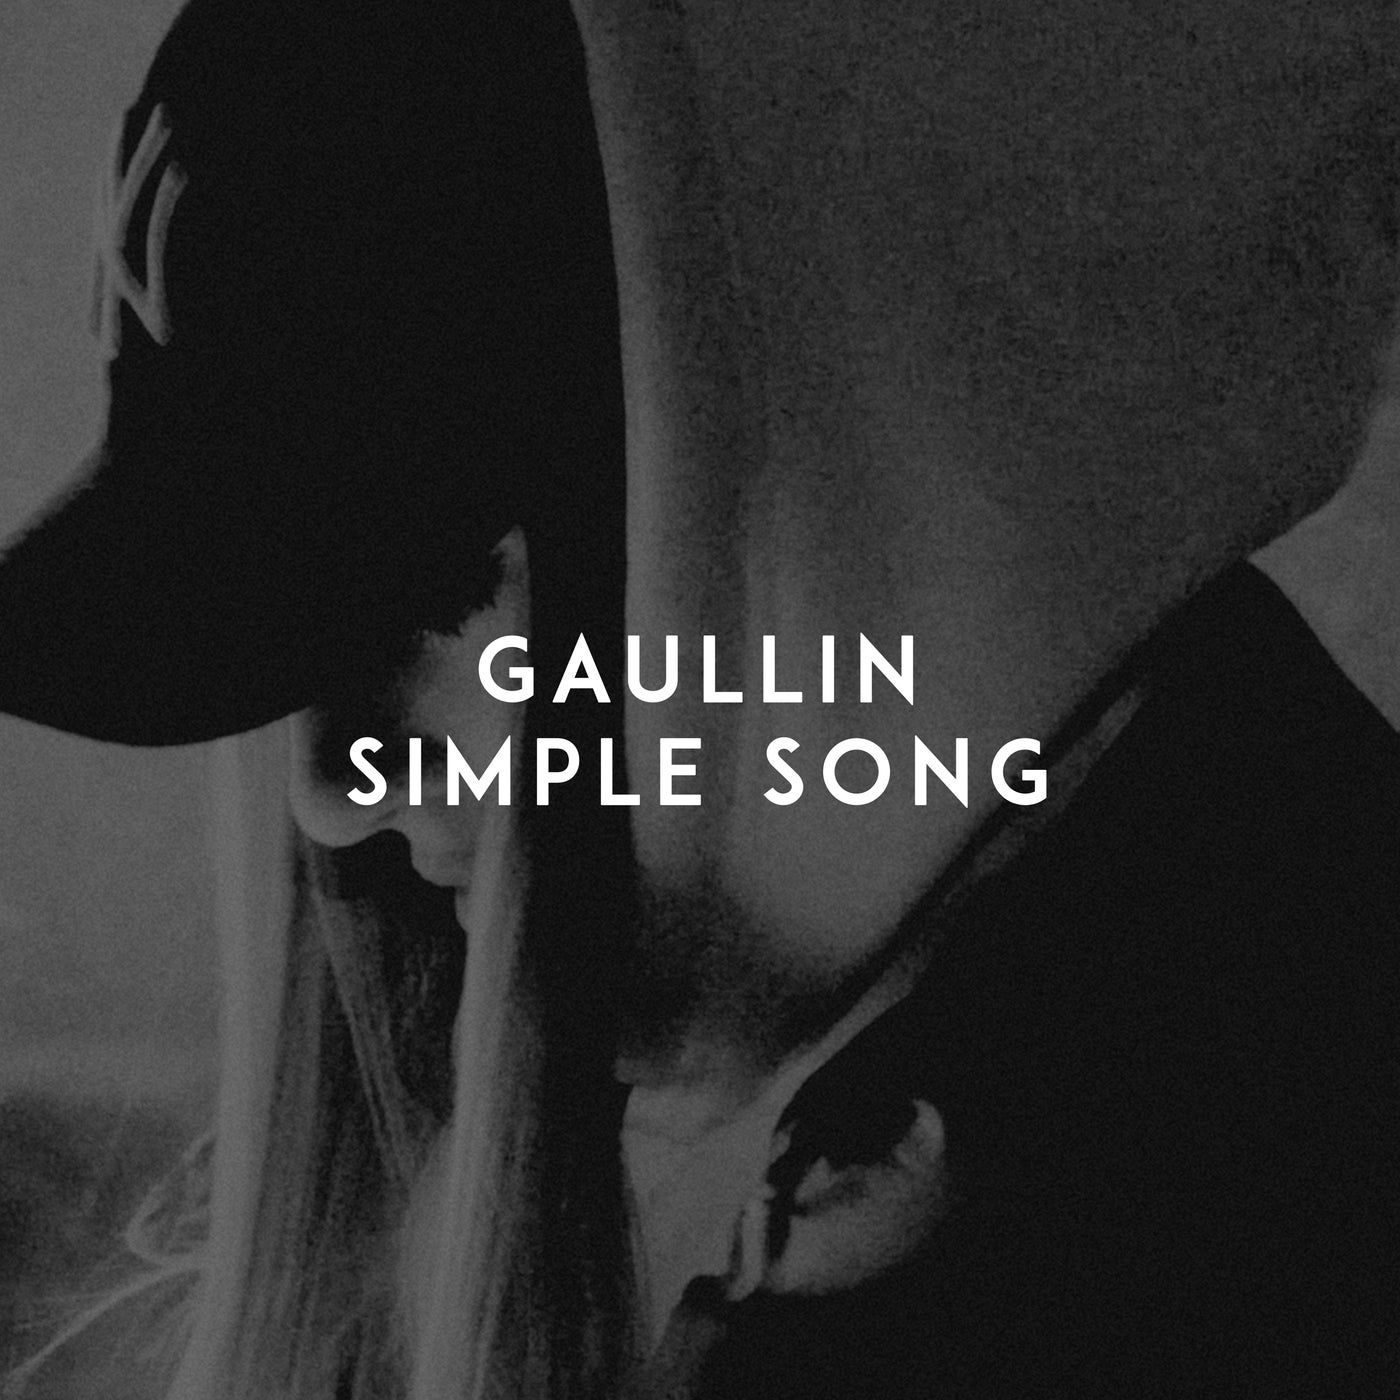 Gaullin. Gaullin the one. Simple песня. Gaullin like u. Включи песню симпл